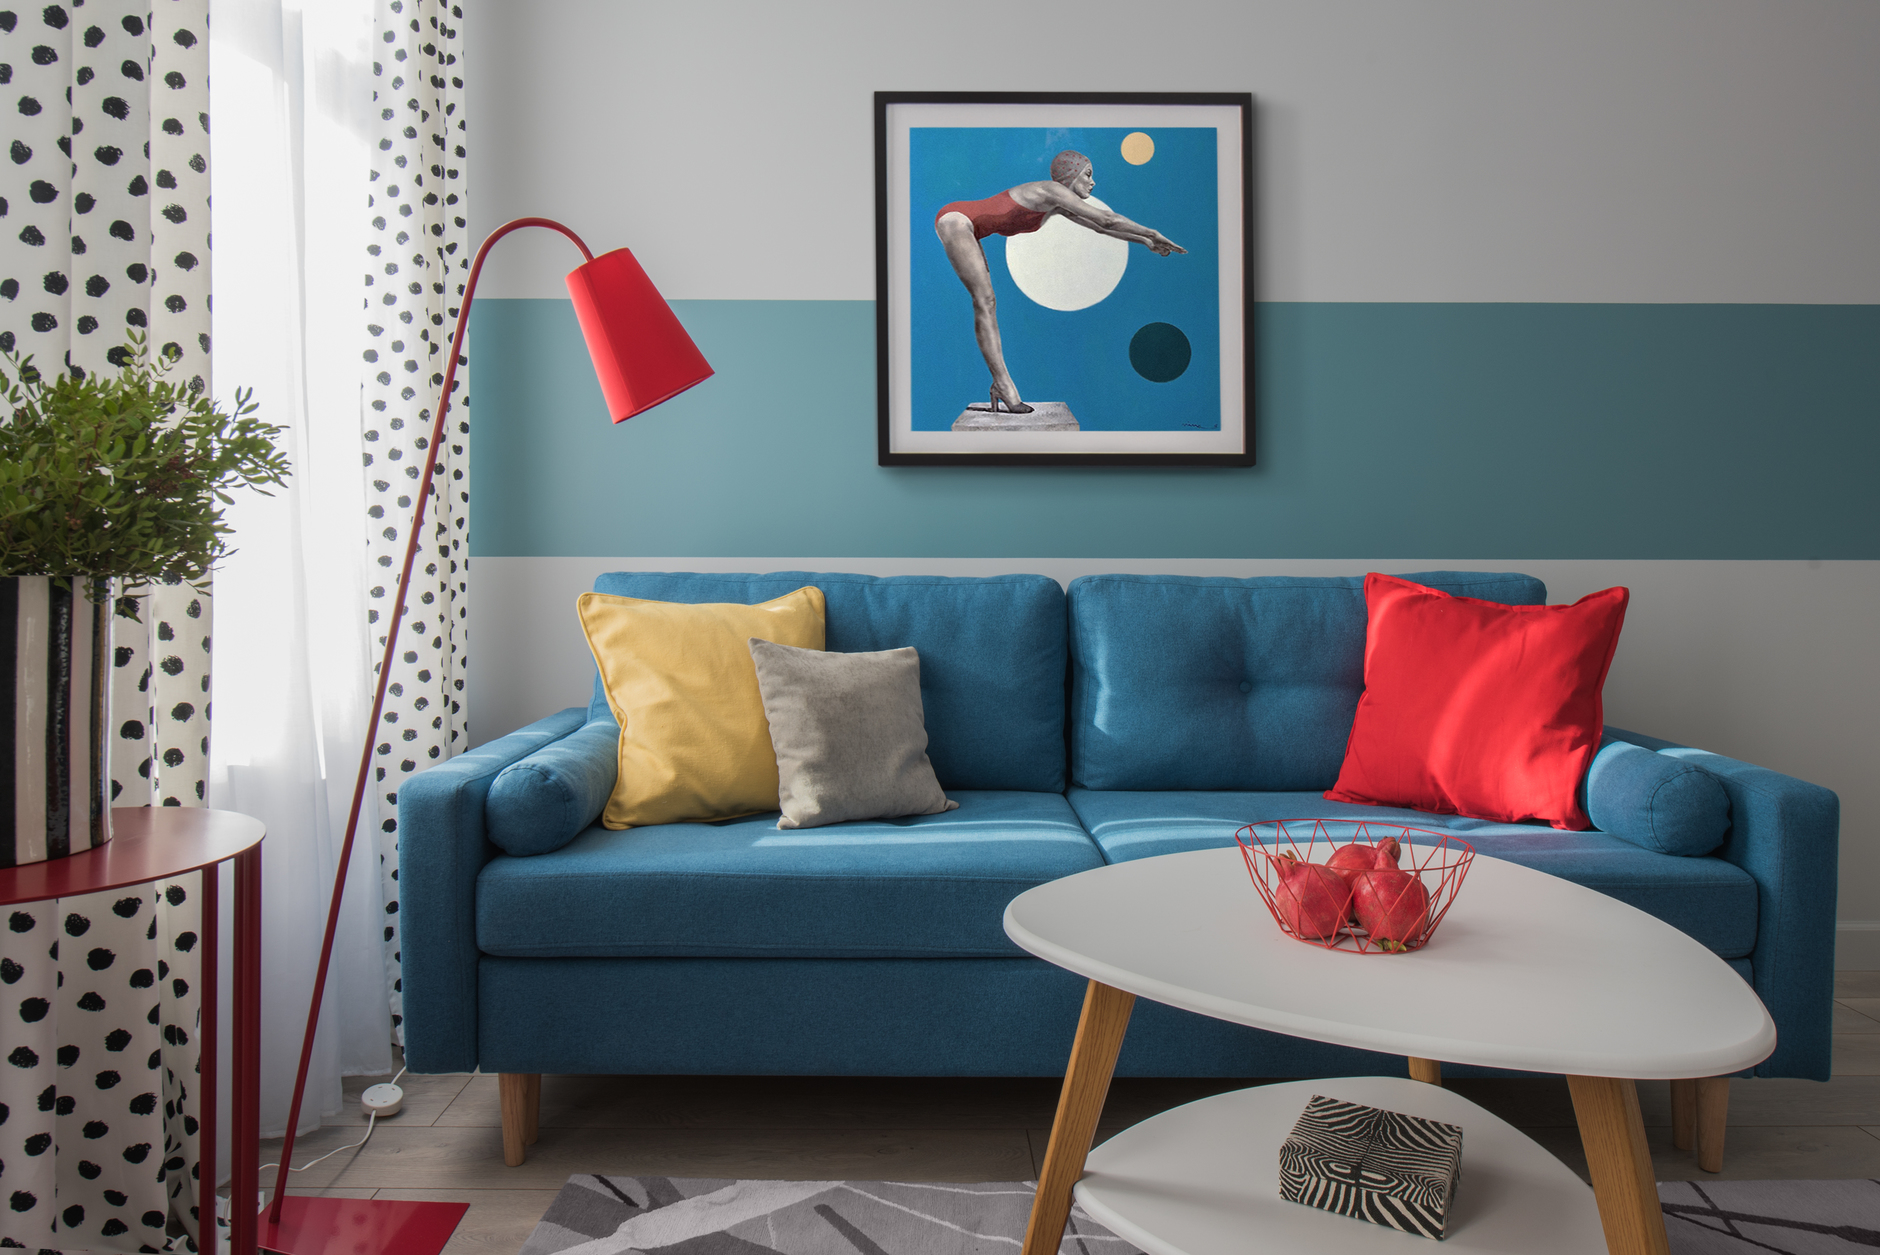 Ghế sofa xanh lam tone màu đậm hơn so với sơn sọc kẻ ngang. Những chiếc gối màu đỏ, vàng, xám cùng đèn sàn dáng cao sắc đỏ trông vừa thanh mảnh vừa linh hoạt. Bức tranh vận động viên trang trí cho tường sau sofa thêm sinh động.